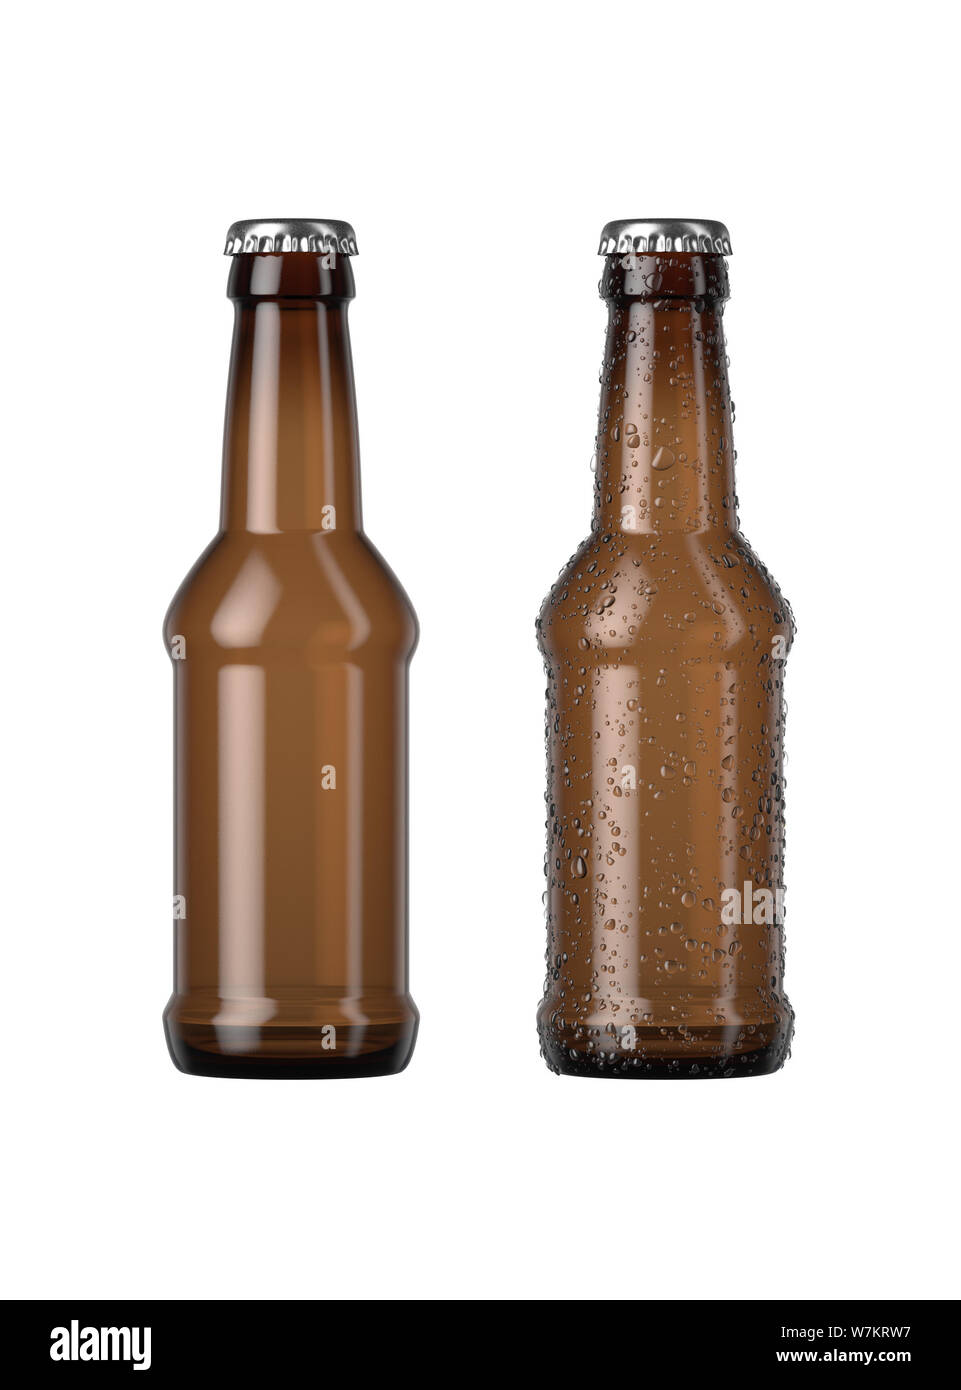 Ein normales Braunglas Bier Flasche neben einem anderen mit Tröpfchen von Kondensation auf einer isolierten weißen studio Hintergrund - 3D-Rendering Stockfoto